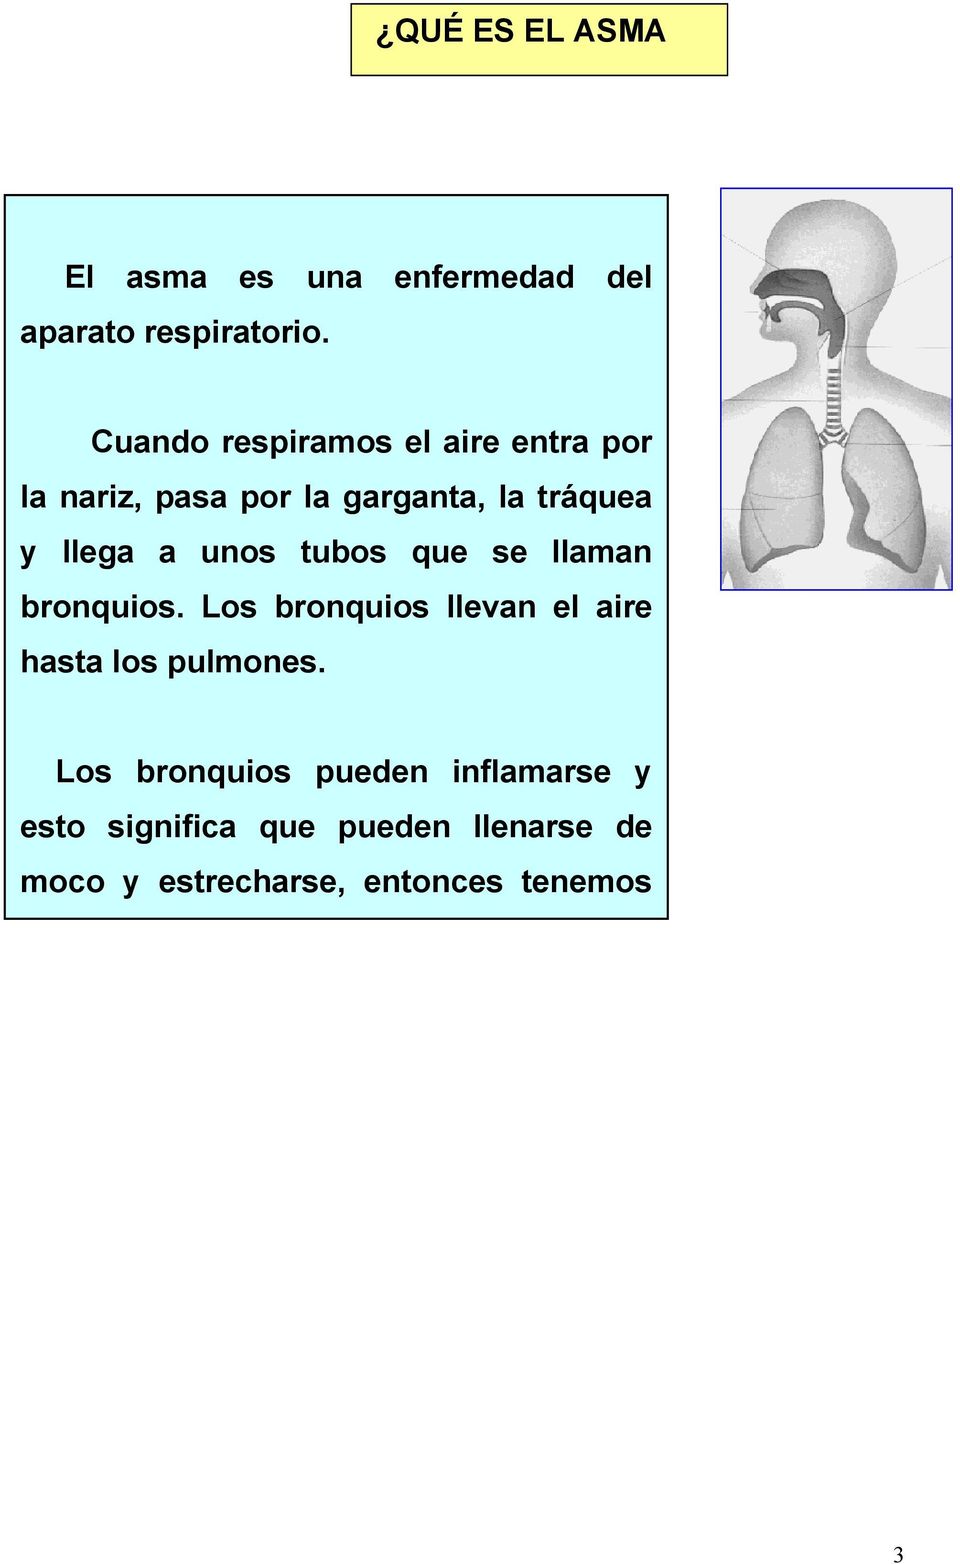 unos tubos que se llaman bronquios. Los bronquios llevan el aire hasta los pulmones.